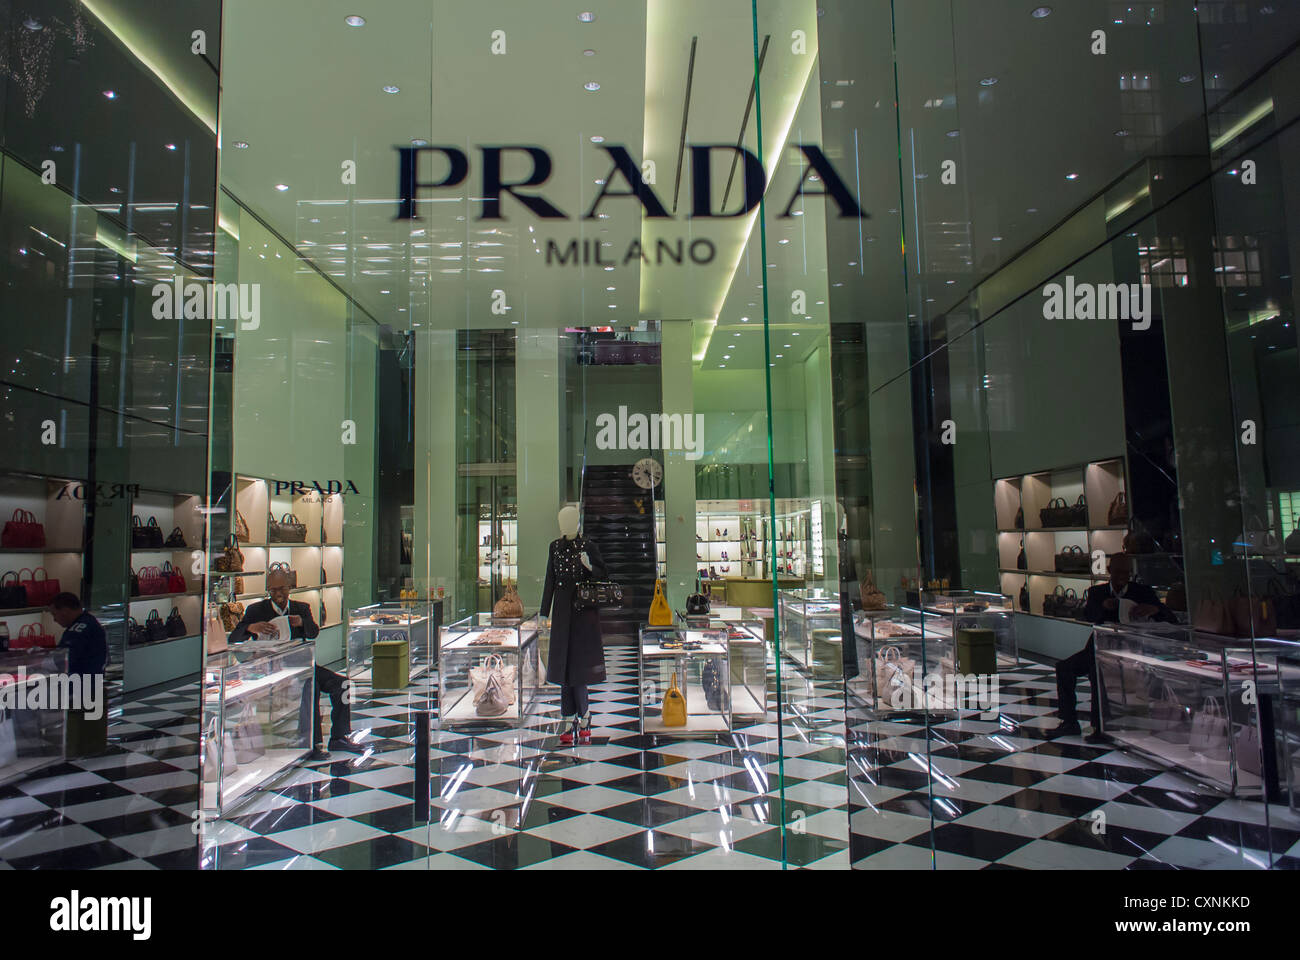 prada luxury clothing